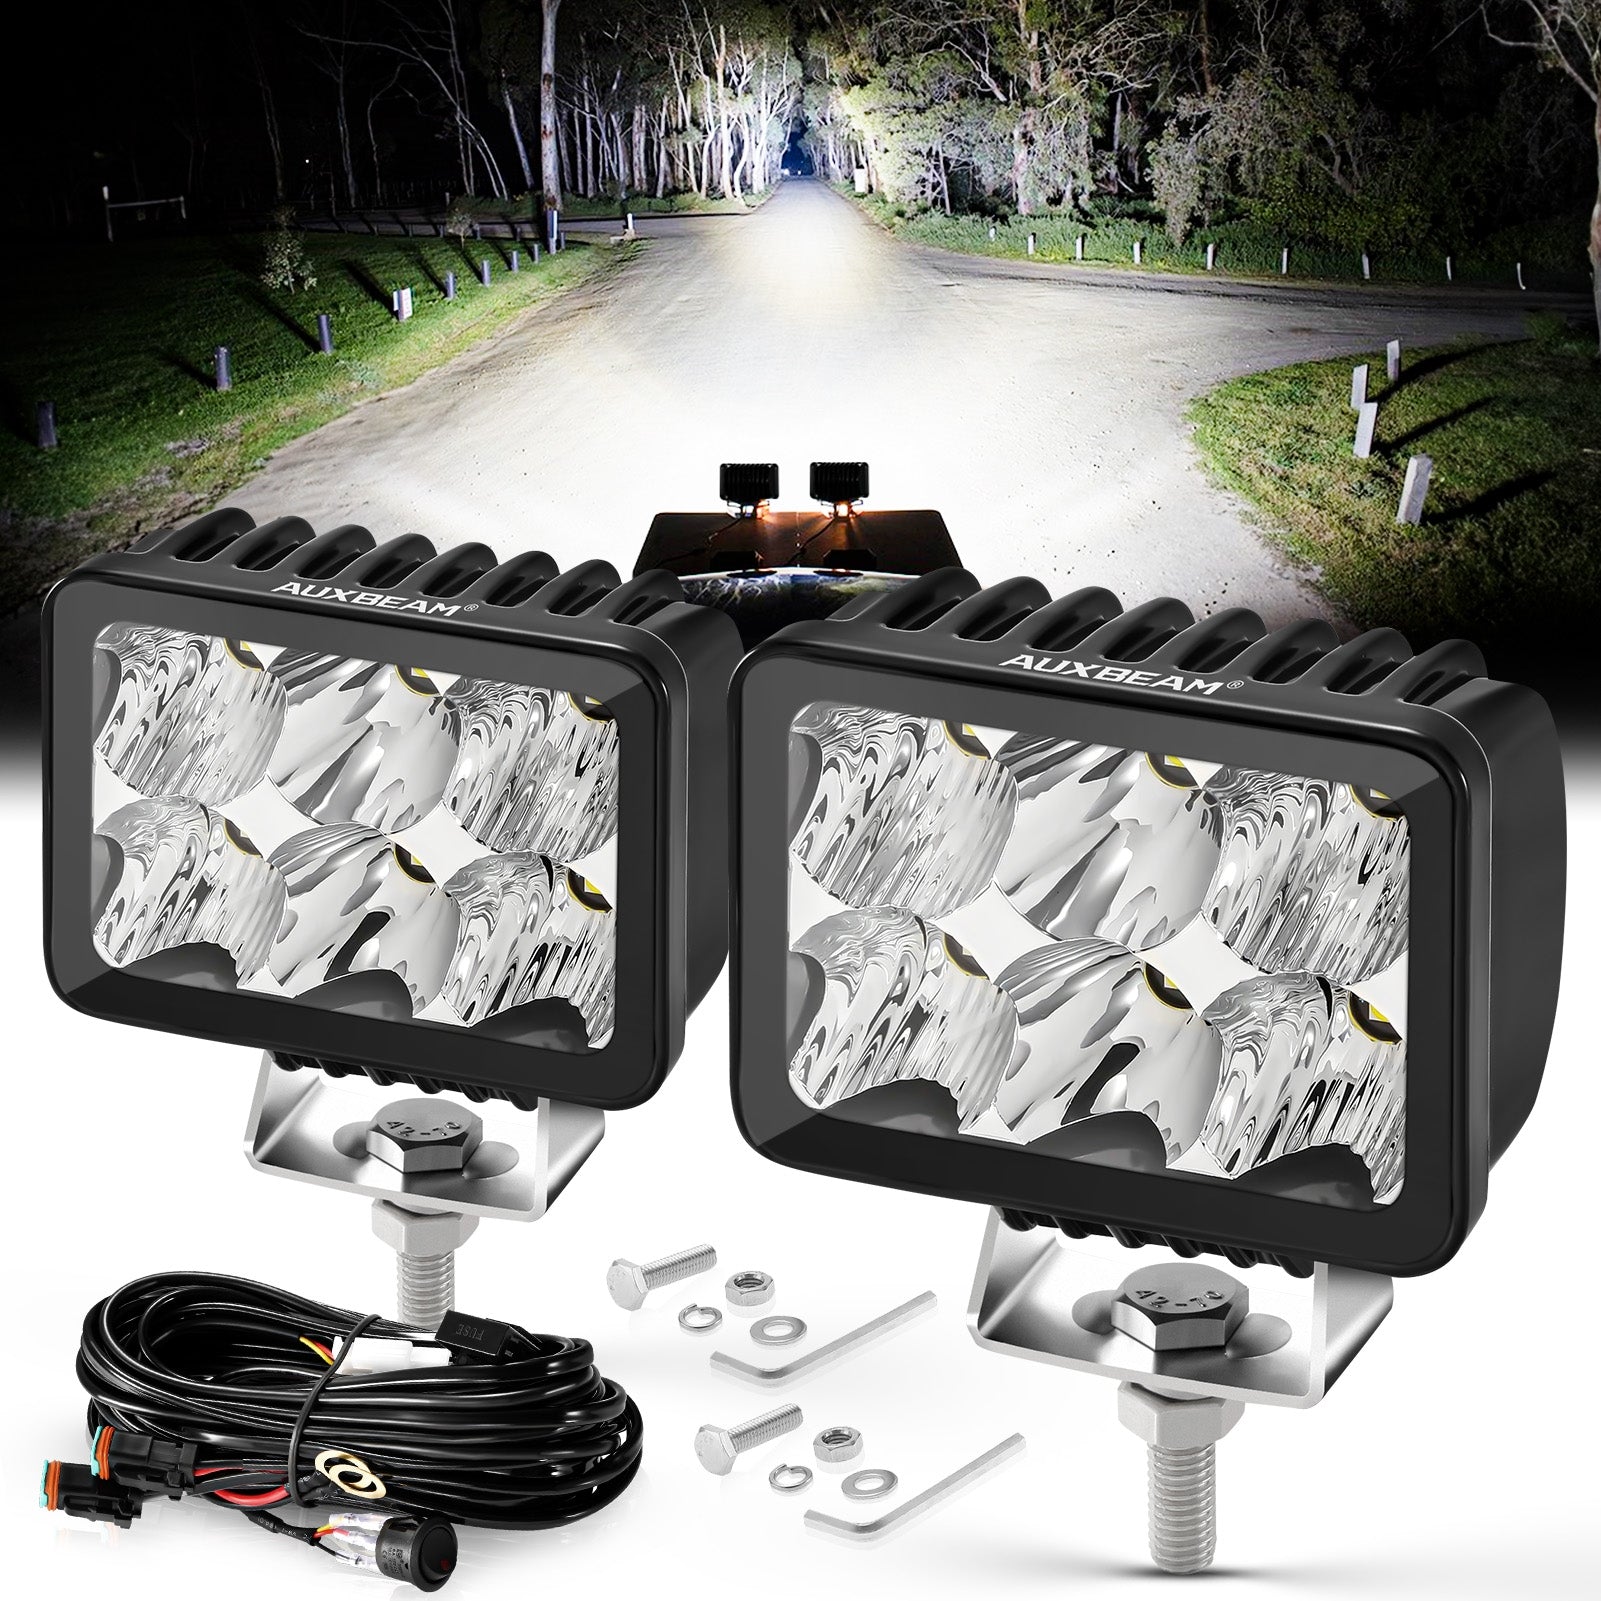 LED Light Pods for Off Road Pickup Trucks, UTV, ATV – Auxbeam Led